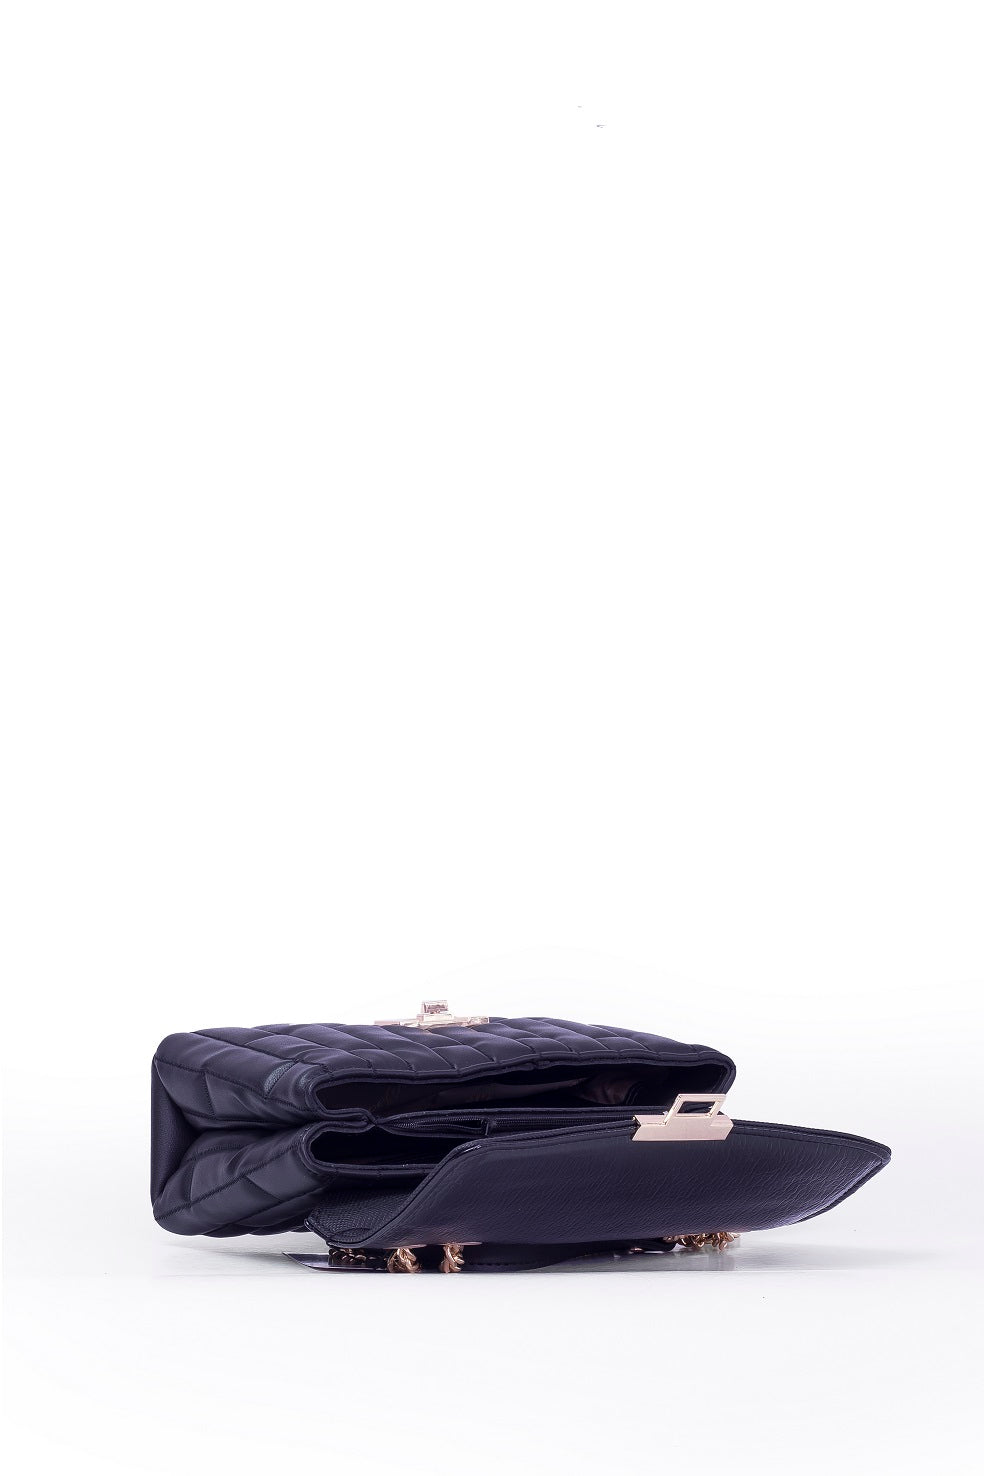 High end designer bag for women - BAG - PARIS - BABY BLACK GOLD